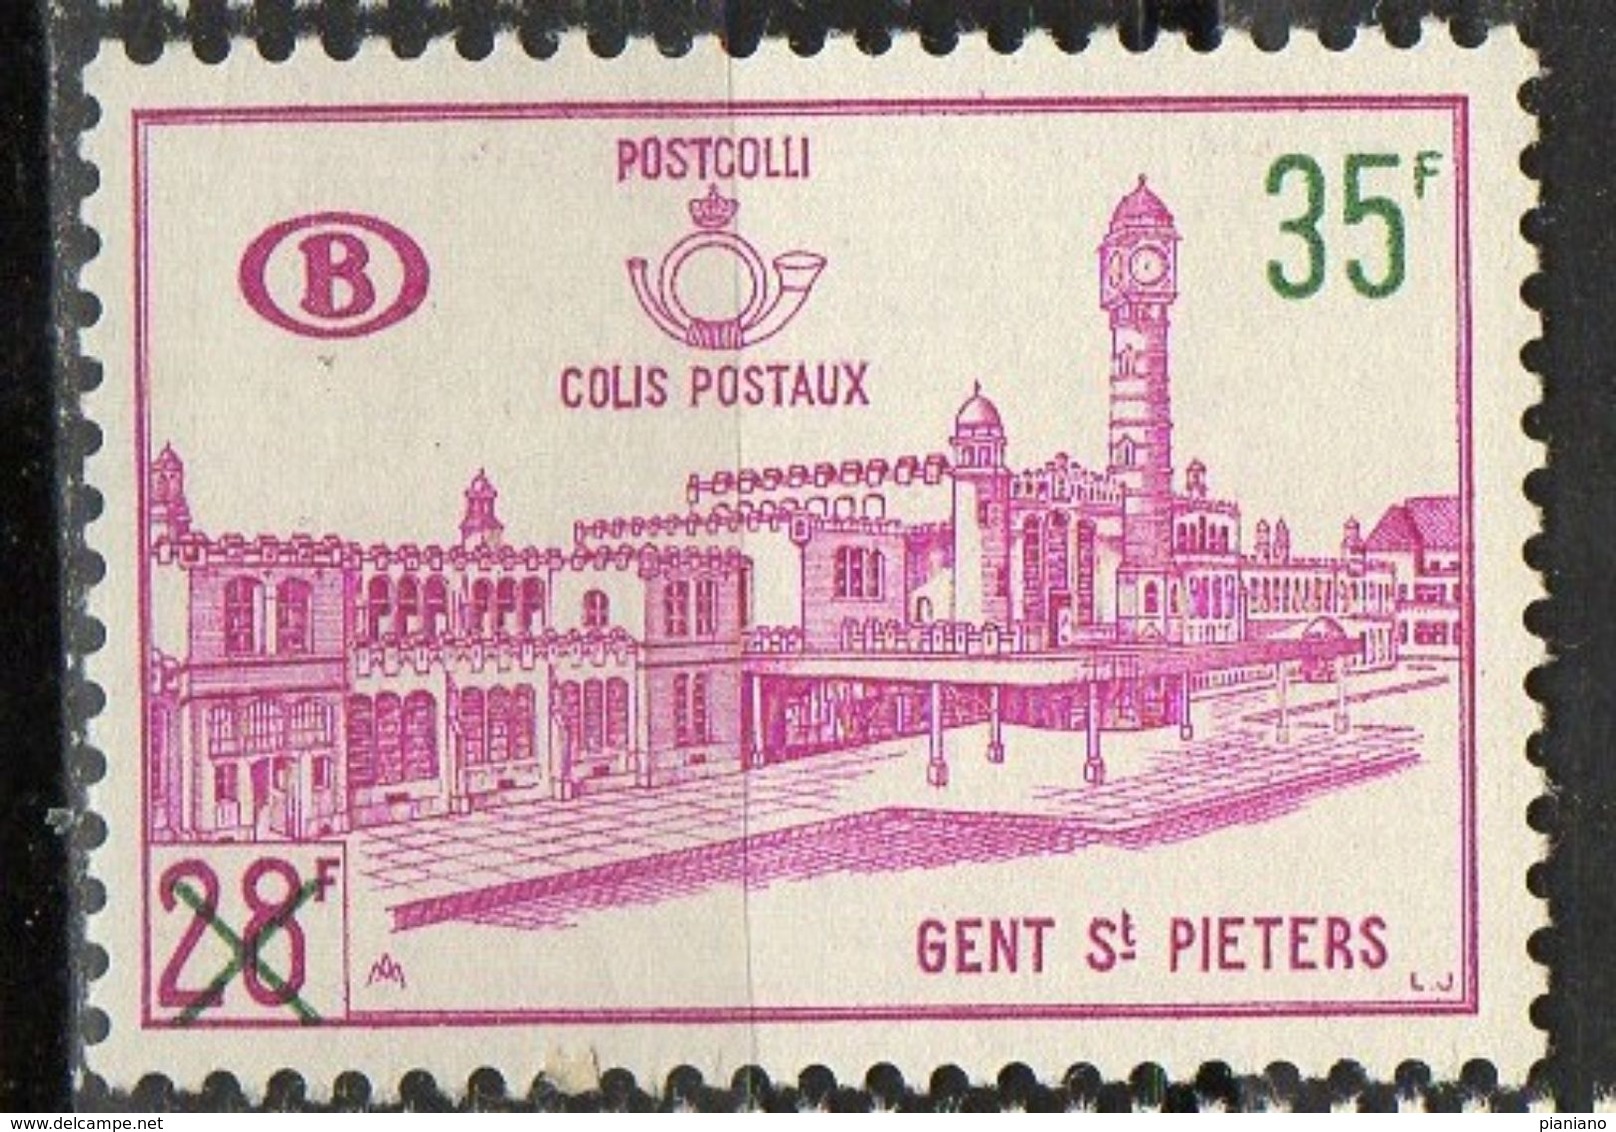 PIA - BEL -  1964 - Stazione Centrale Di Anversa - Francobollo Precedente Sovrastampato-  (Yv PACCHI 377) - Reisgoedzegels [BA]